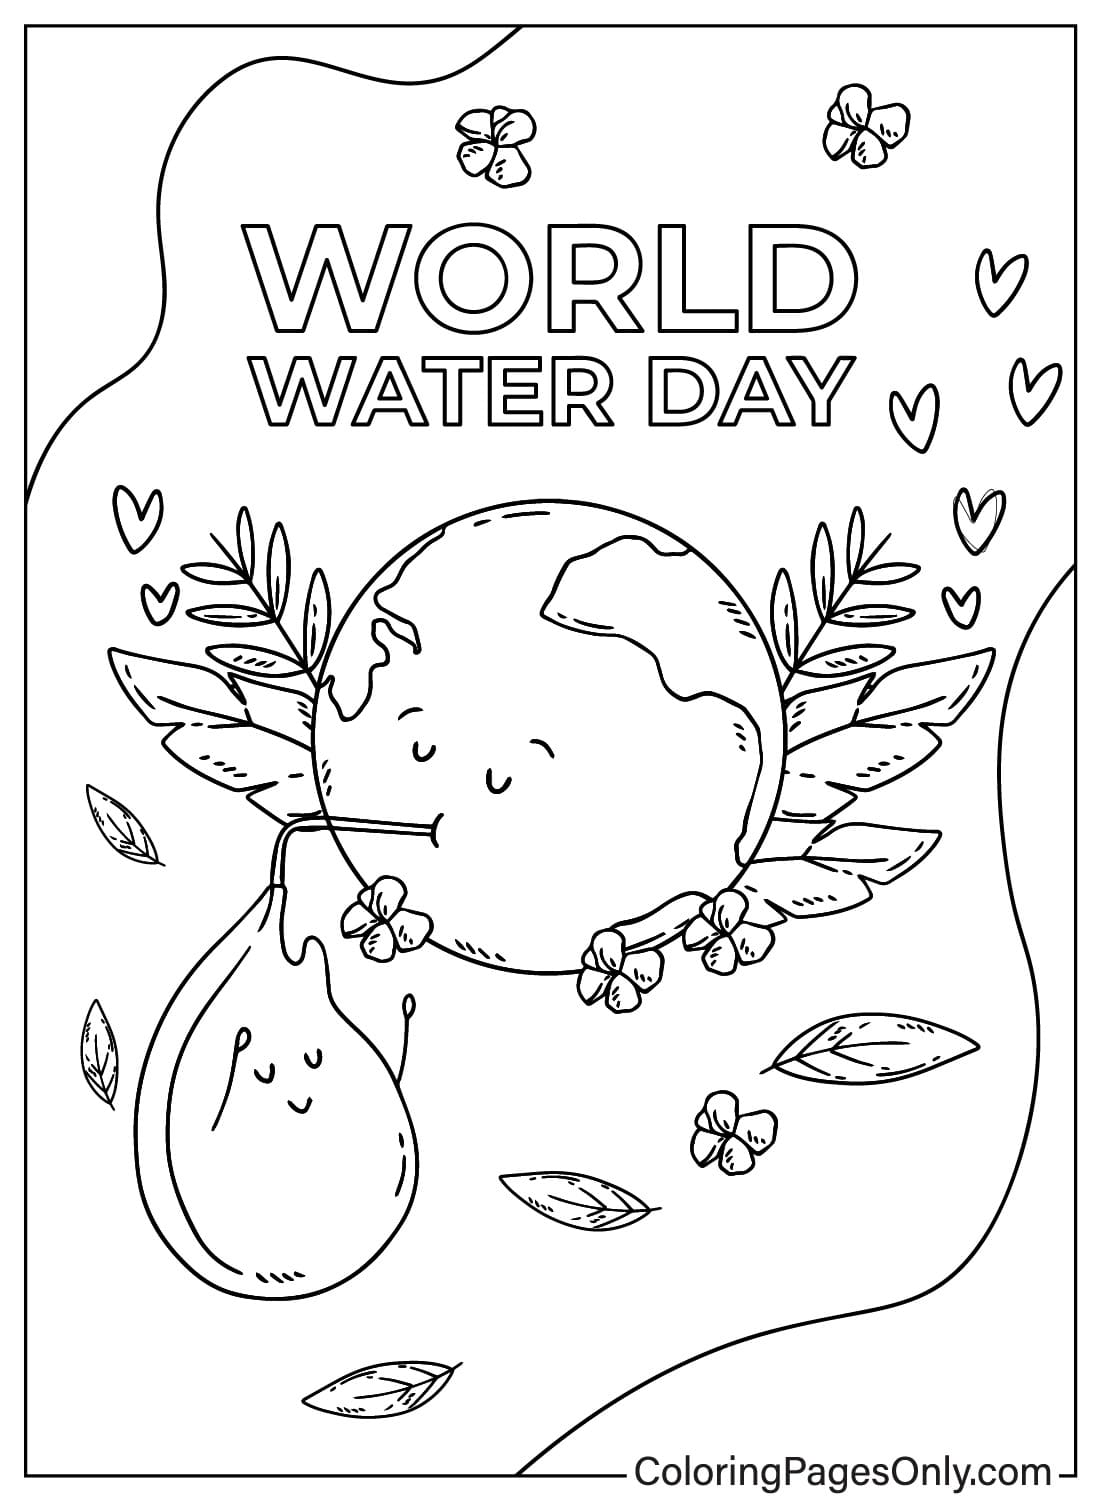 Página para colorear del Día Mundial de la Tierra y el Agua del Día Mundial del Agua